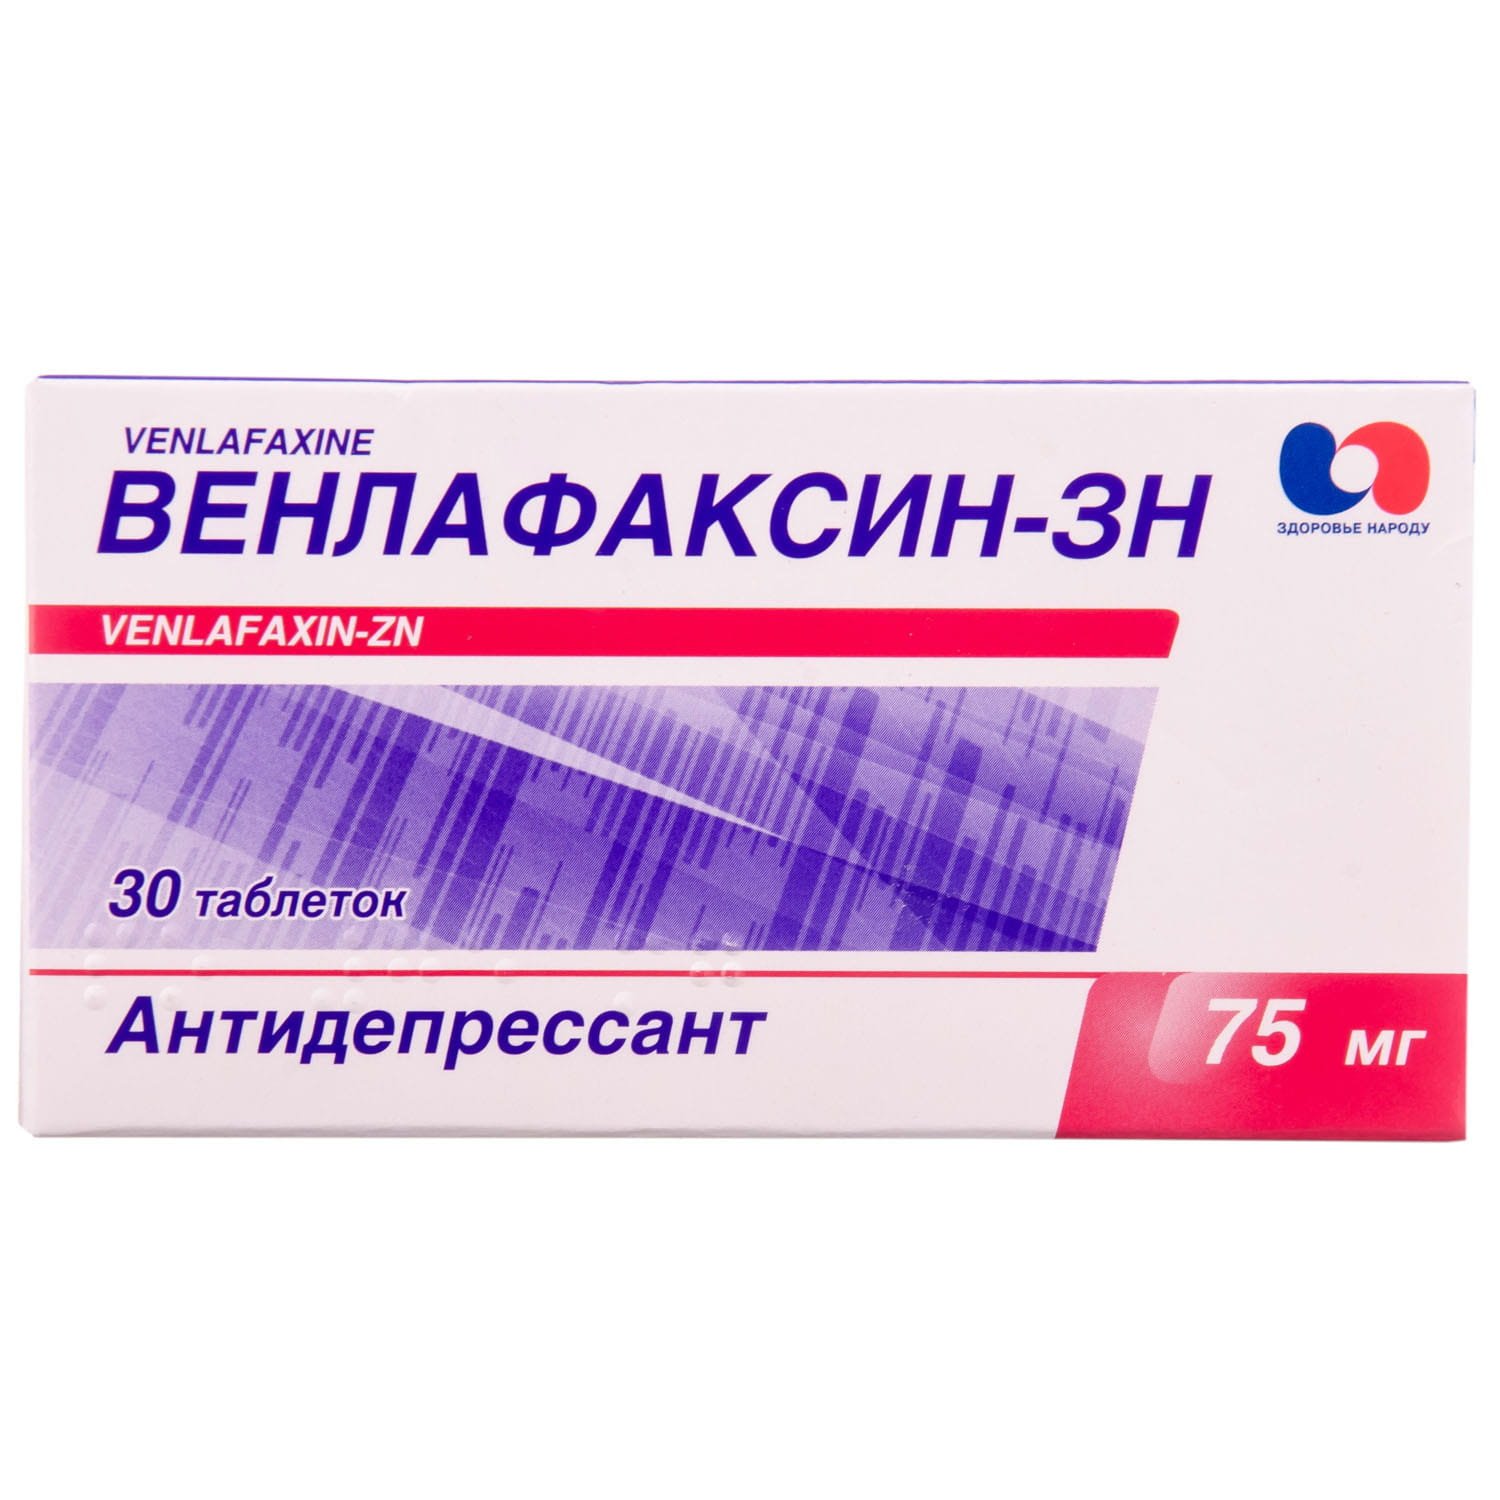 Венлафаксин-ЗН таблетки по 75 мг, 30 шт.: инструкция, цена, отзывы .